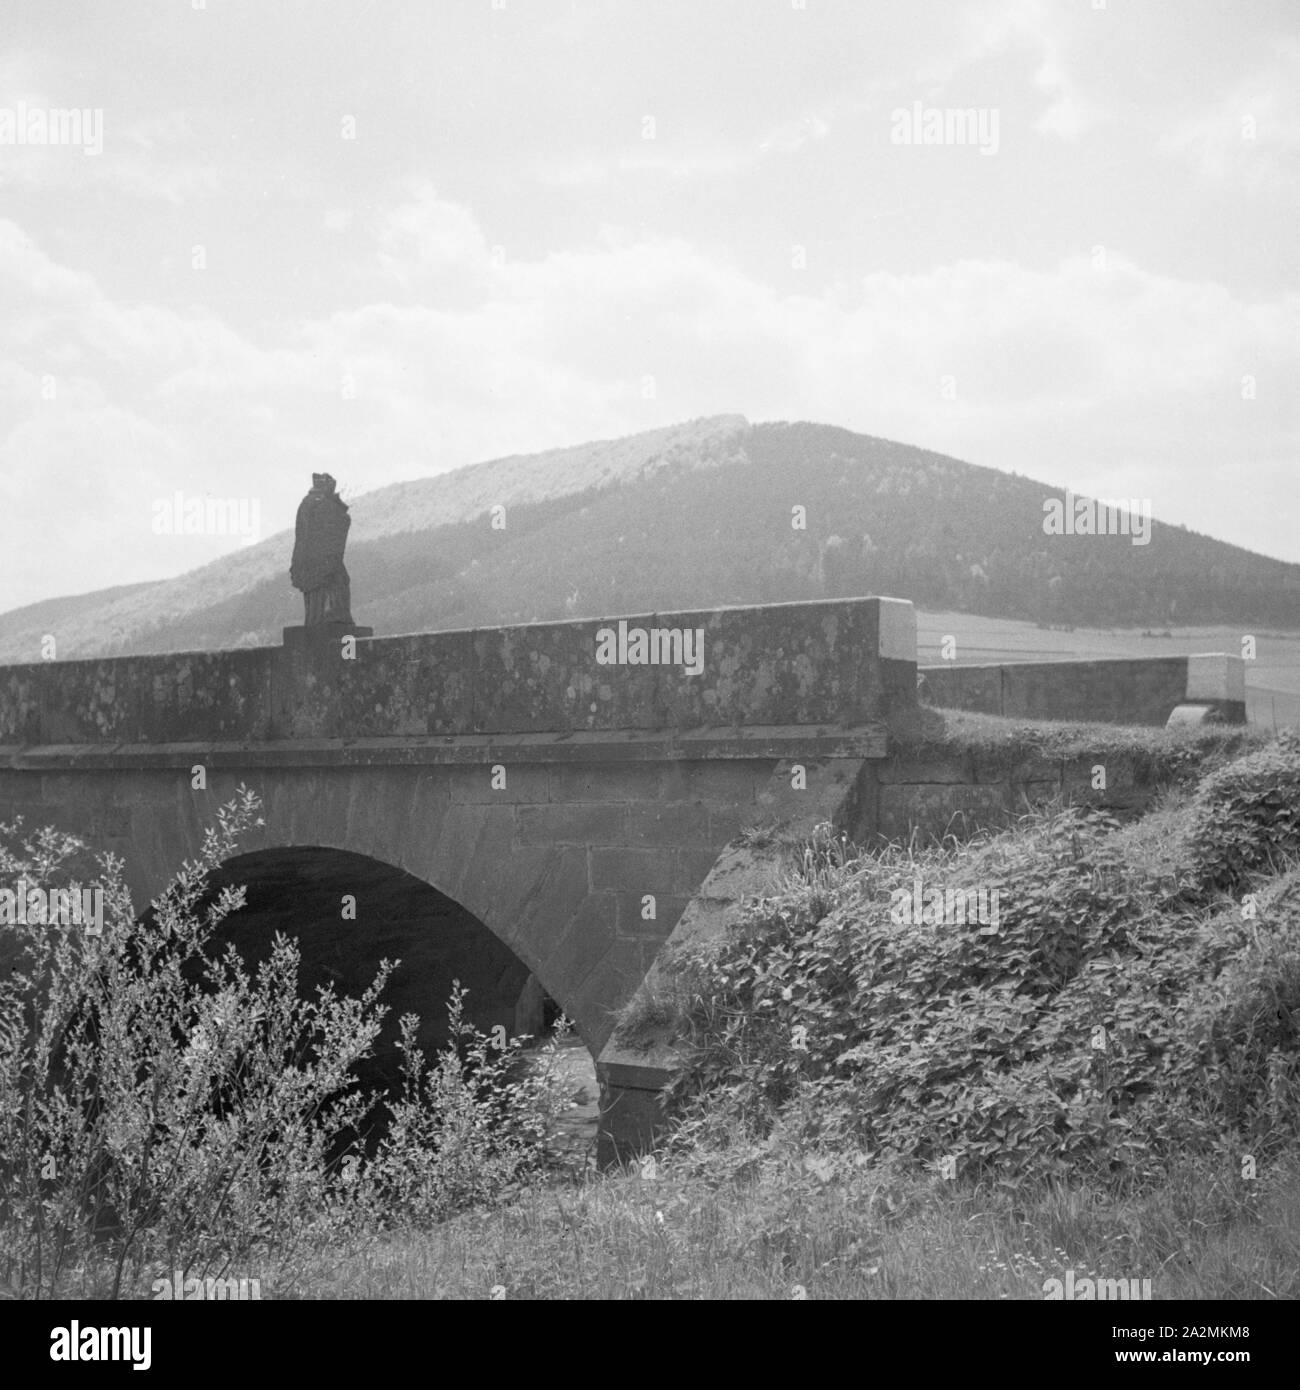 Kleine Brücke mit Heiligenfigur im Odenwald, Deutschland 1930er Jahre. Piccolo ponte con la scultura di un santo nella regione di Odenwald, Germania 1930s. Foto Stock